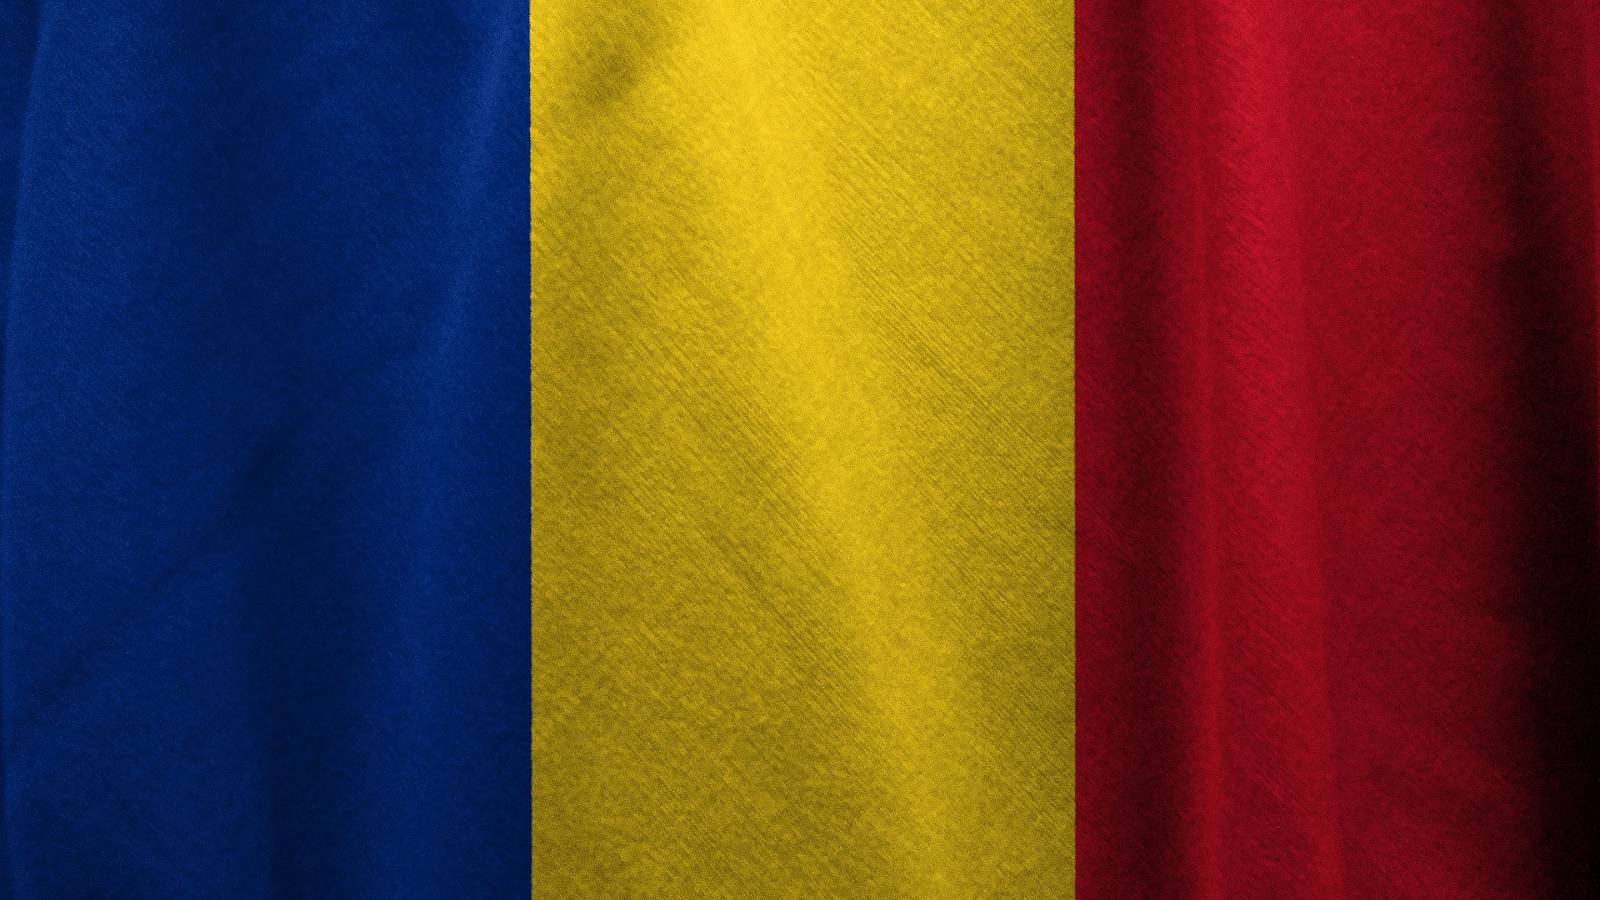 DSU Rumania Fuerte incendio extinguido Bomberos de Timisoara